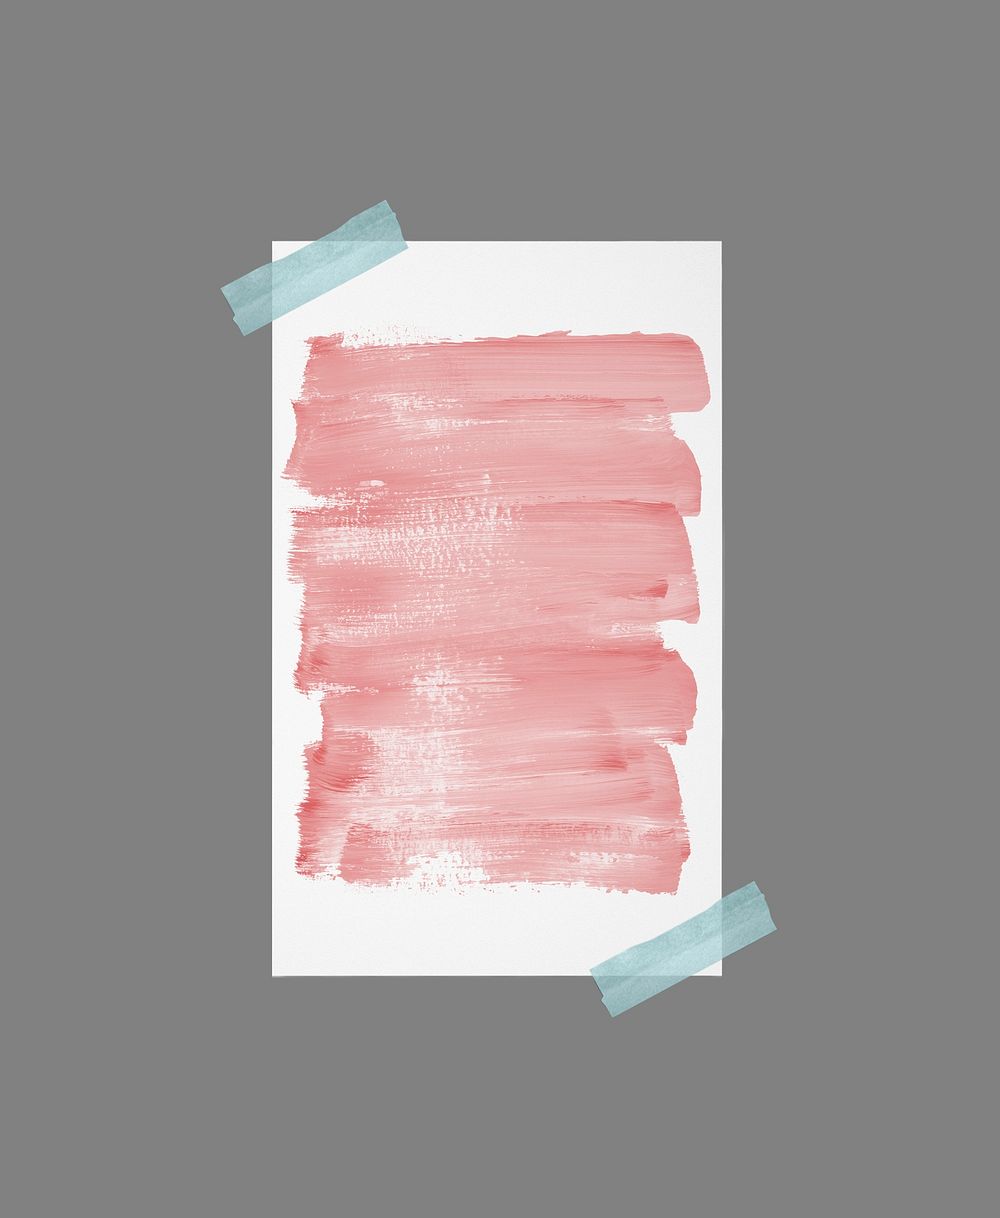 Aesthetic memo frame background, pink brushstroke